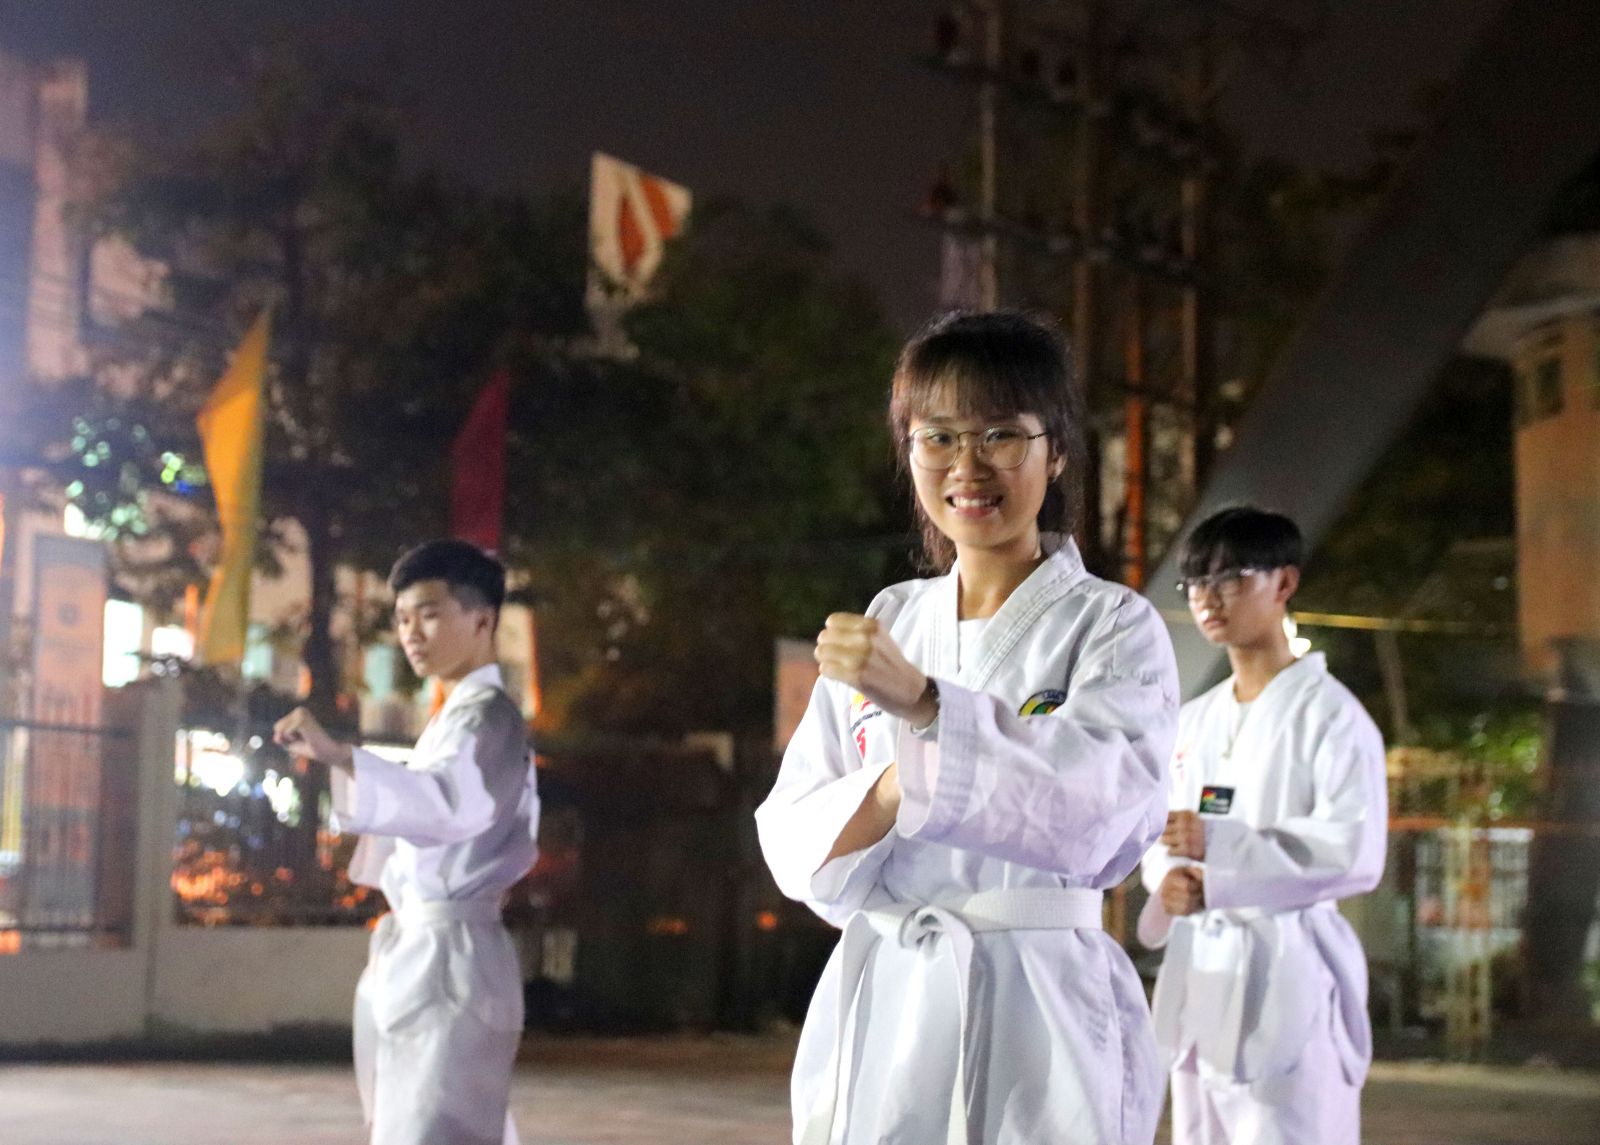 Em Phan Võ Quyên Nhi, học sinh lớp 10, Trường THPT Tân An, cũng có niềm đam mê đặc biệt với võ thuật